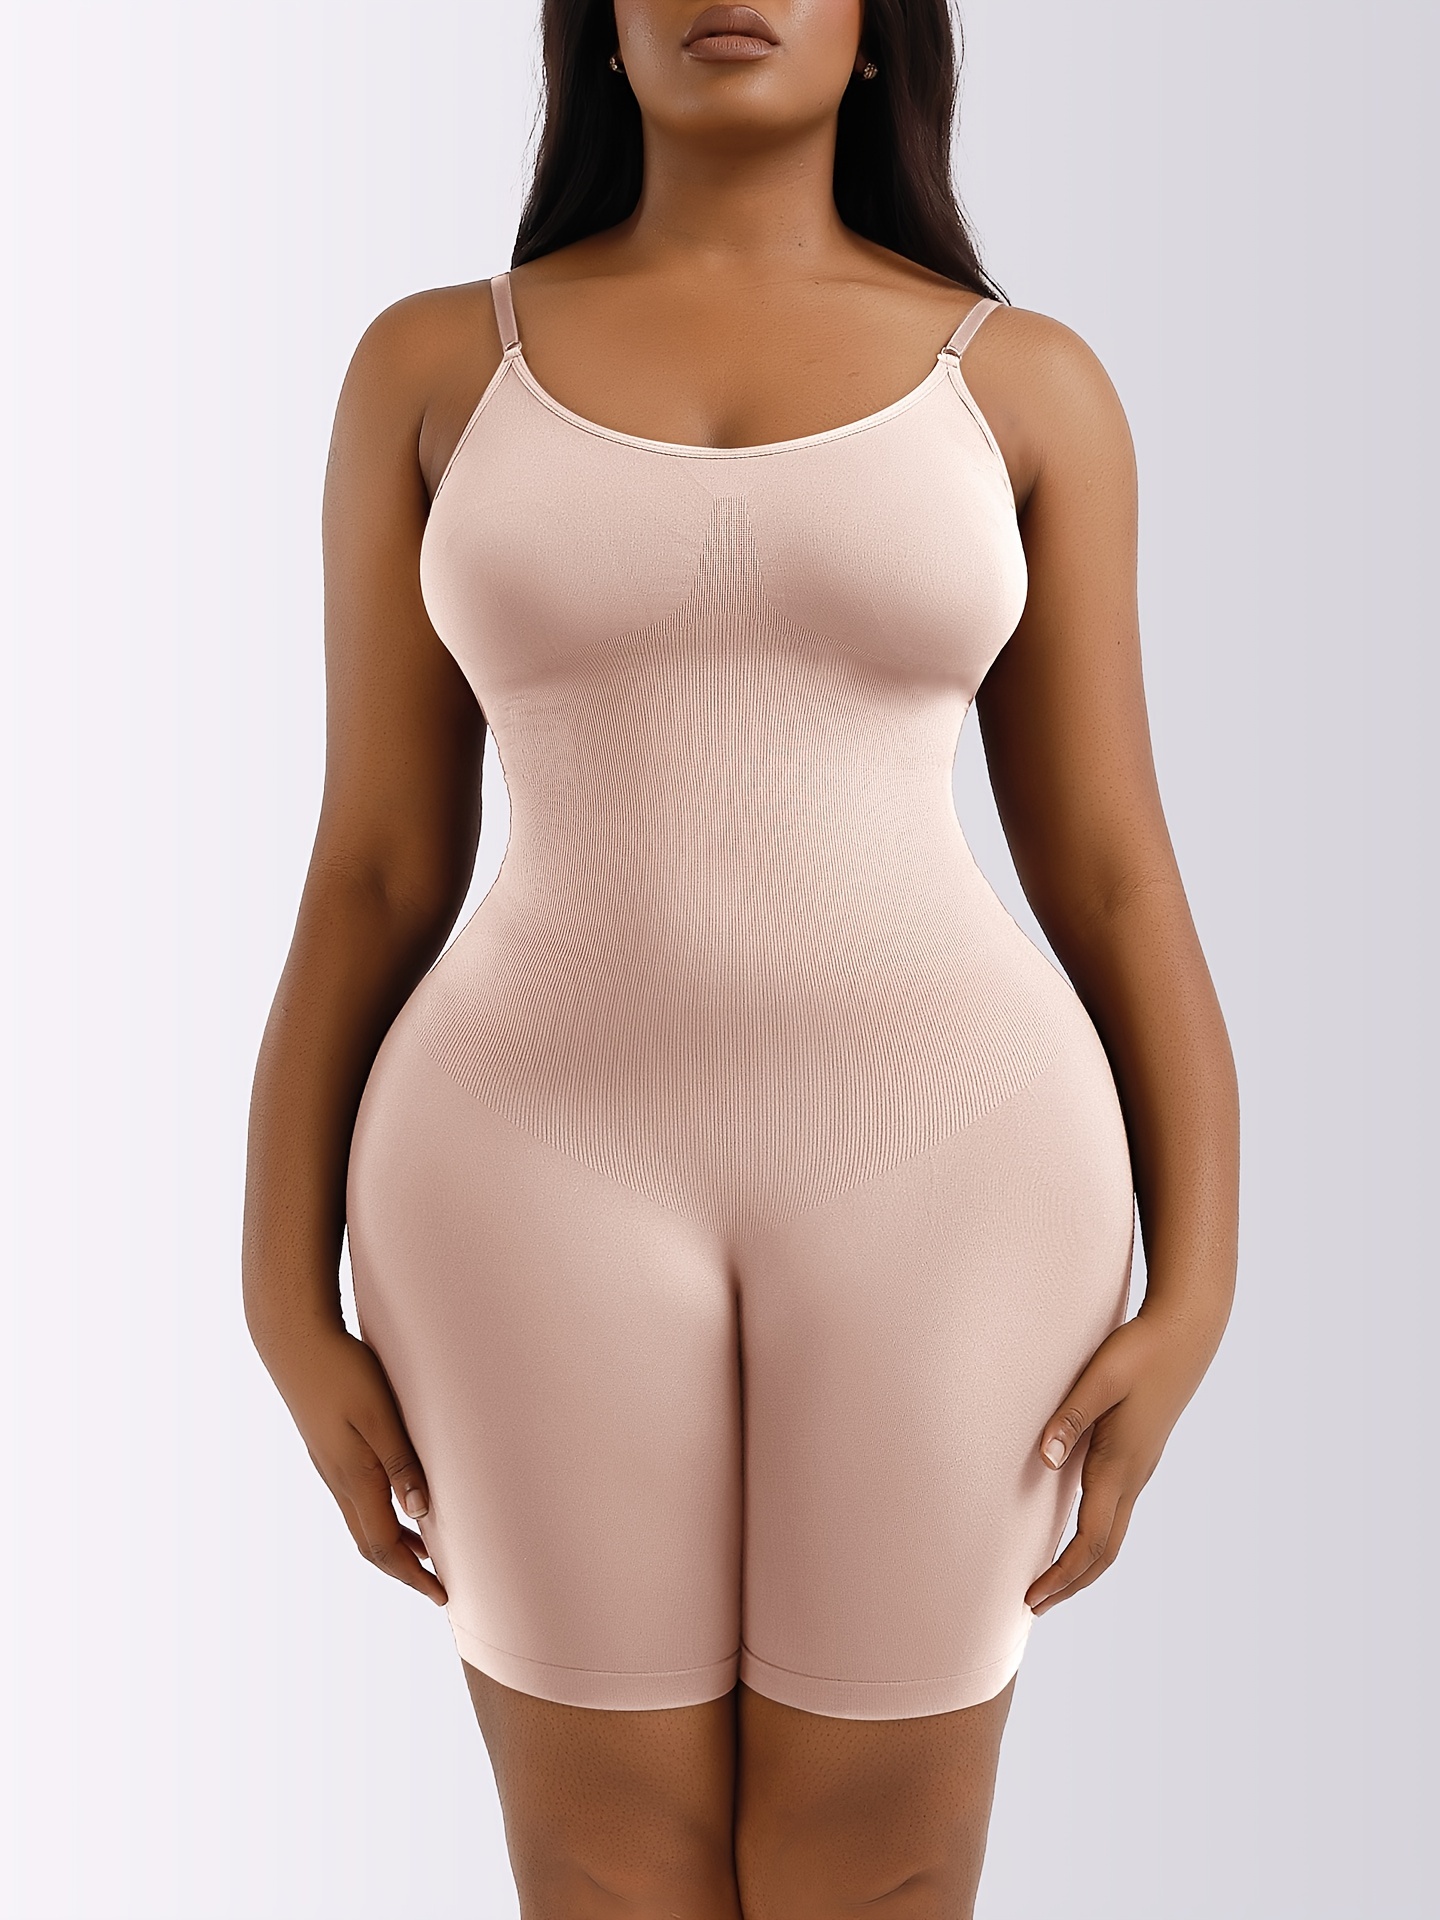 Plus Size Women Full Body Shaper for Women Tummy Control Butt Lift  Shapewear Bodysuit